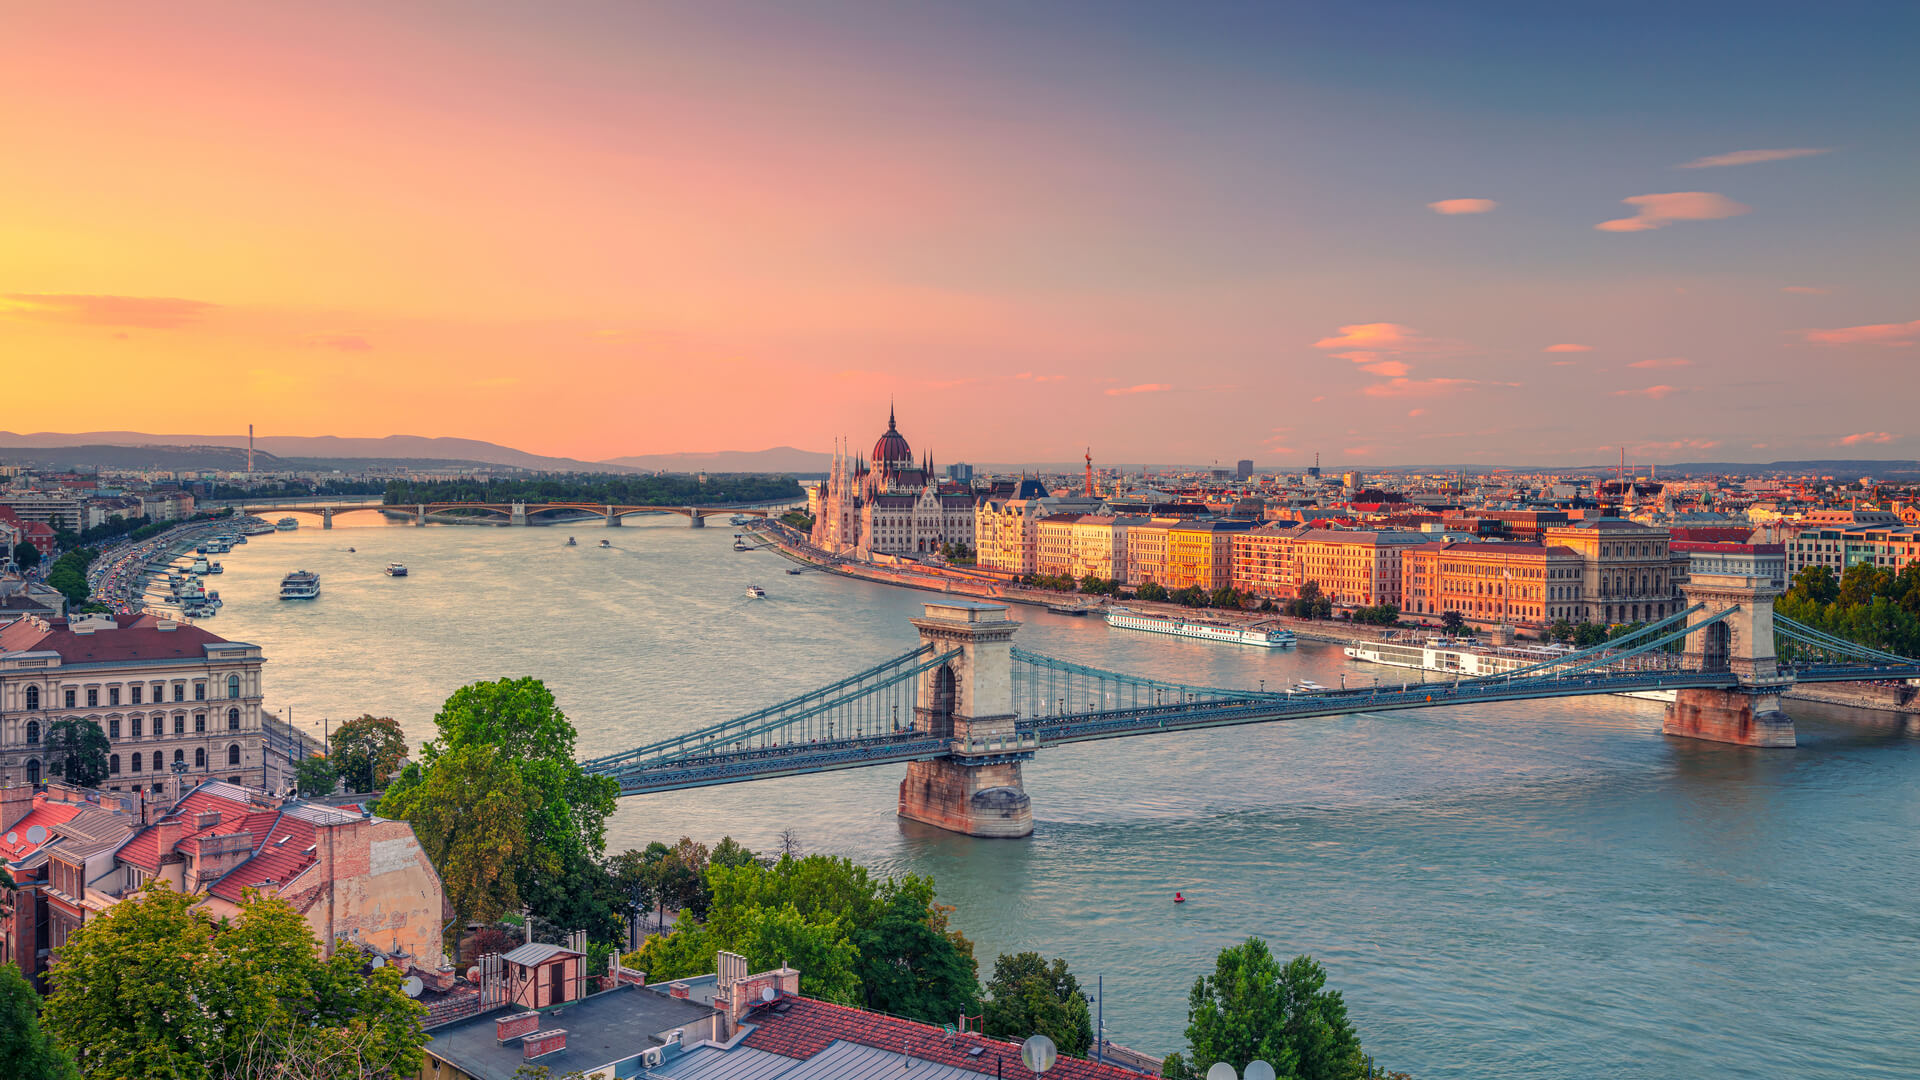 Будапешт, Венгрия. Панорамный снимок городского пейзажа Будапешта с цепным мостом Сечени и зданием парламента во время летнего заката